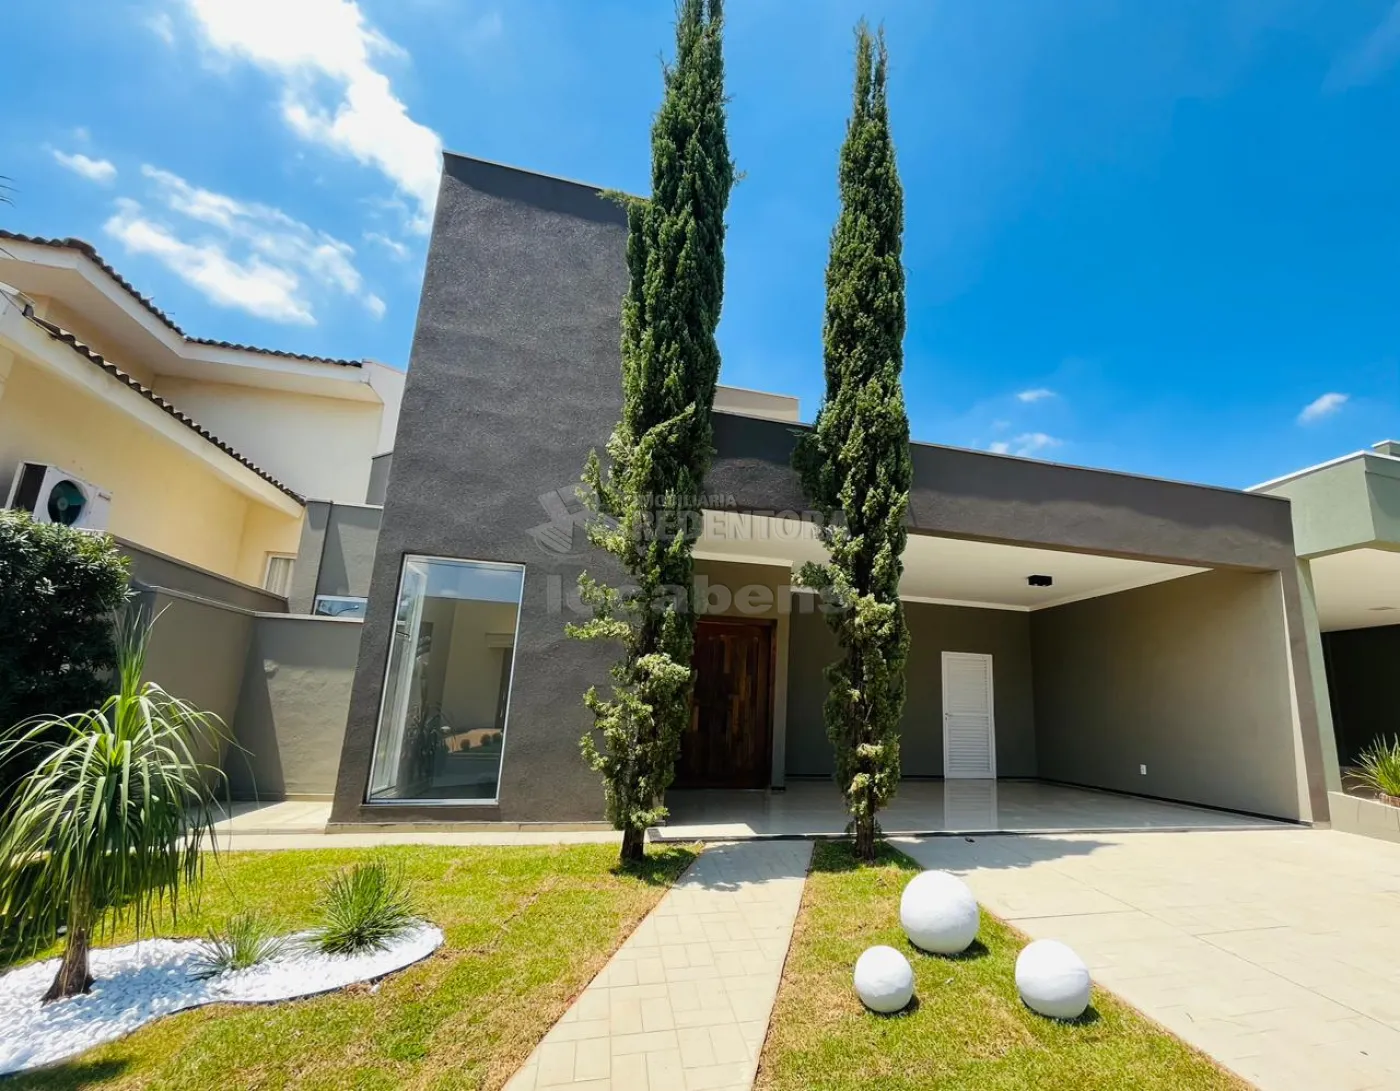 Comprar Casa / Condomínio em Mirassol apenas R$ 860.000,00 - Foto 1